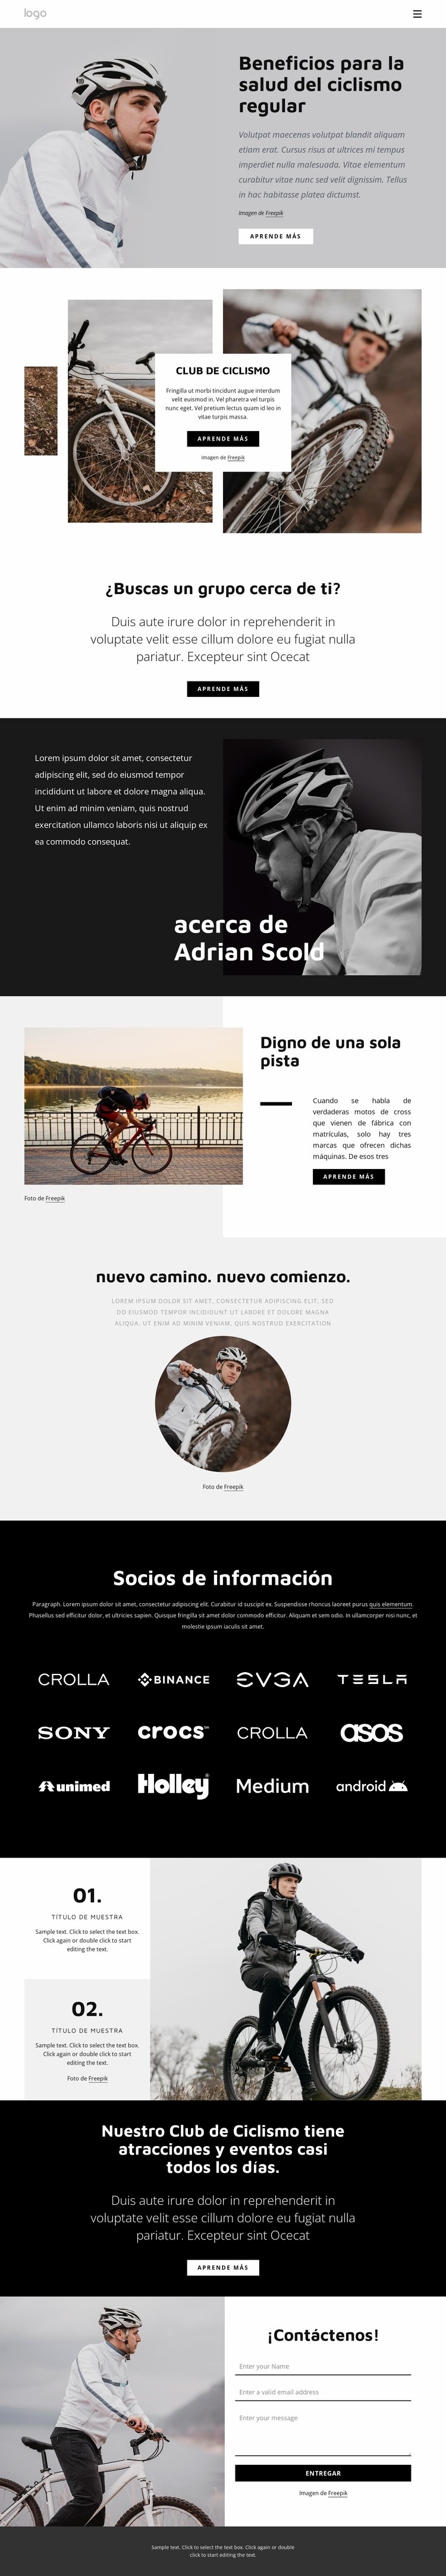 Beneficios del ciclismo regular Diseño de páginas web